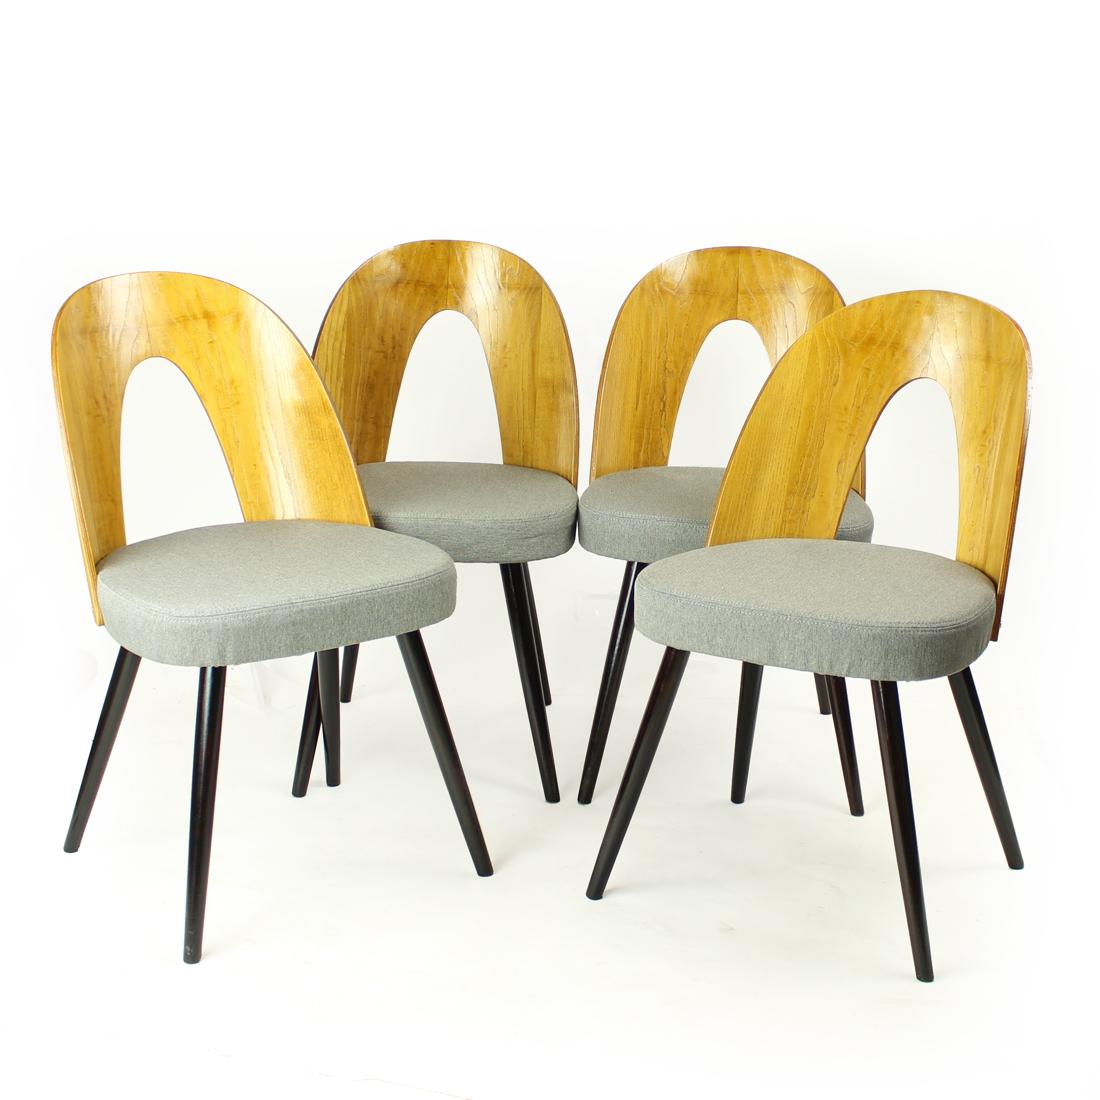 Les emblématiques chaises Tatra produites par Tatra Furniture à Pravenec, en Tchécoslovaquie, dans les années 1960. Conçu par Antonin Šuman. L'ensemble est entièrement restauré, la base étant teintée d'un brun plus foncé et le dossier étant plaqué